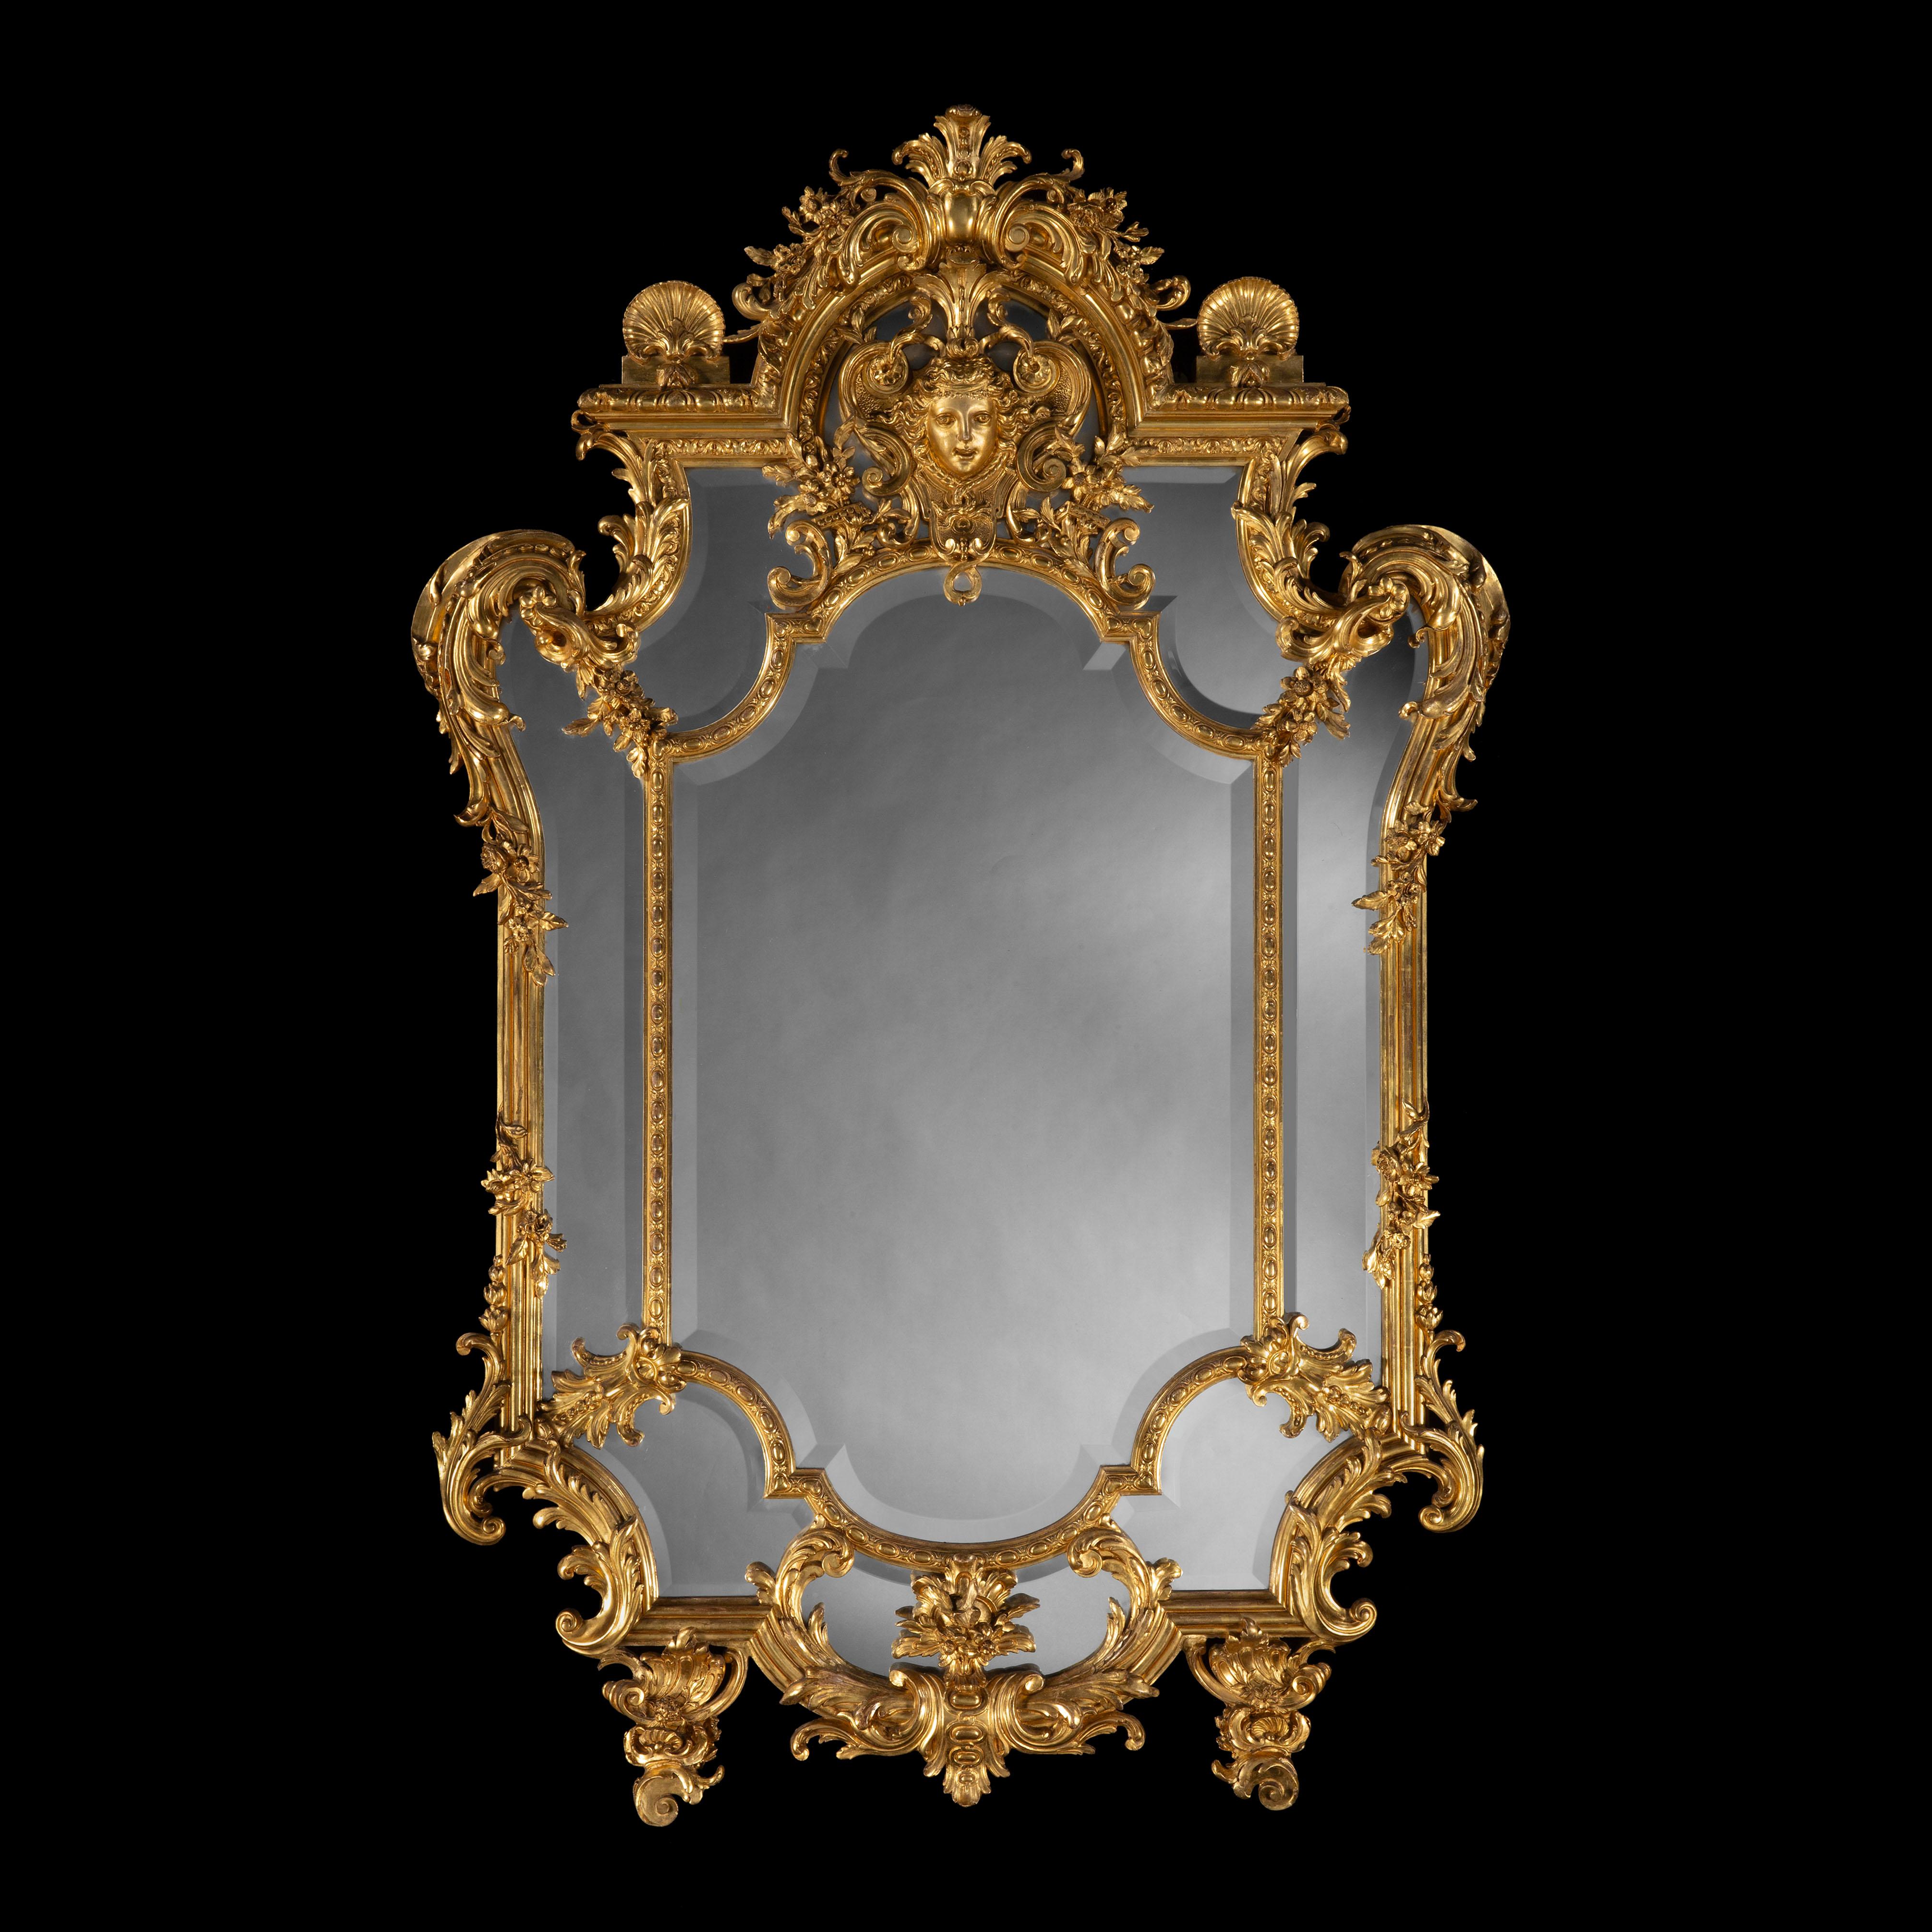 Impressionnant miroir en bois sculpté et doré
Dans le style Régence

Le cadre est sculpté de rinceaux, d'une guirlande florale, de pendentifs et d'un masque d'Apollo flanqué de coquillages au niveau de la crête.
Français, vers 1870

Le mobilier